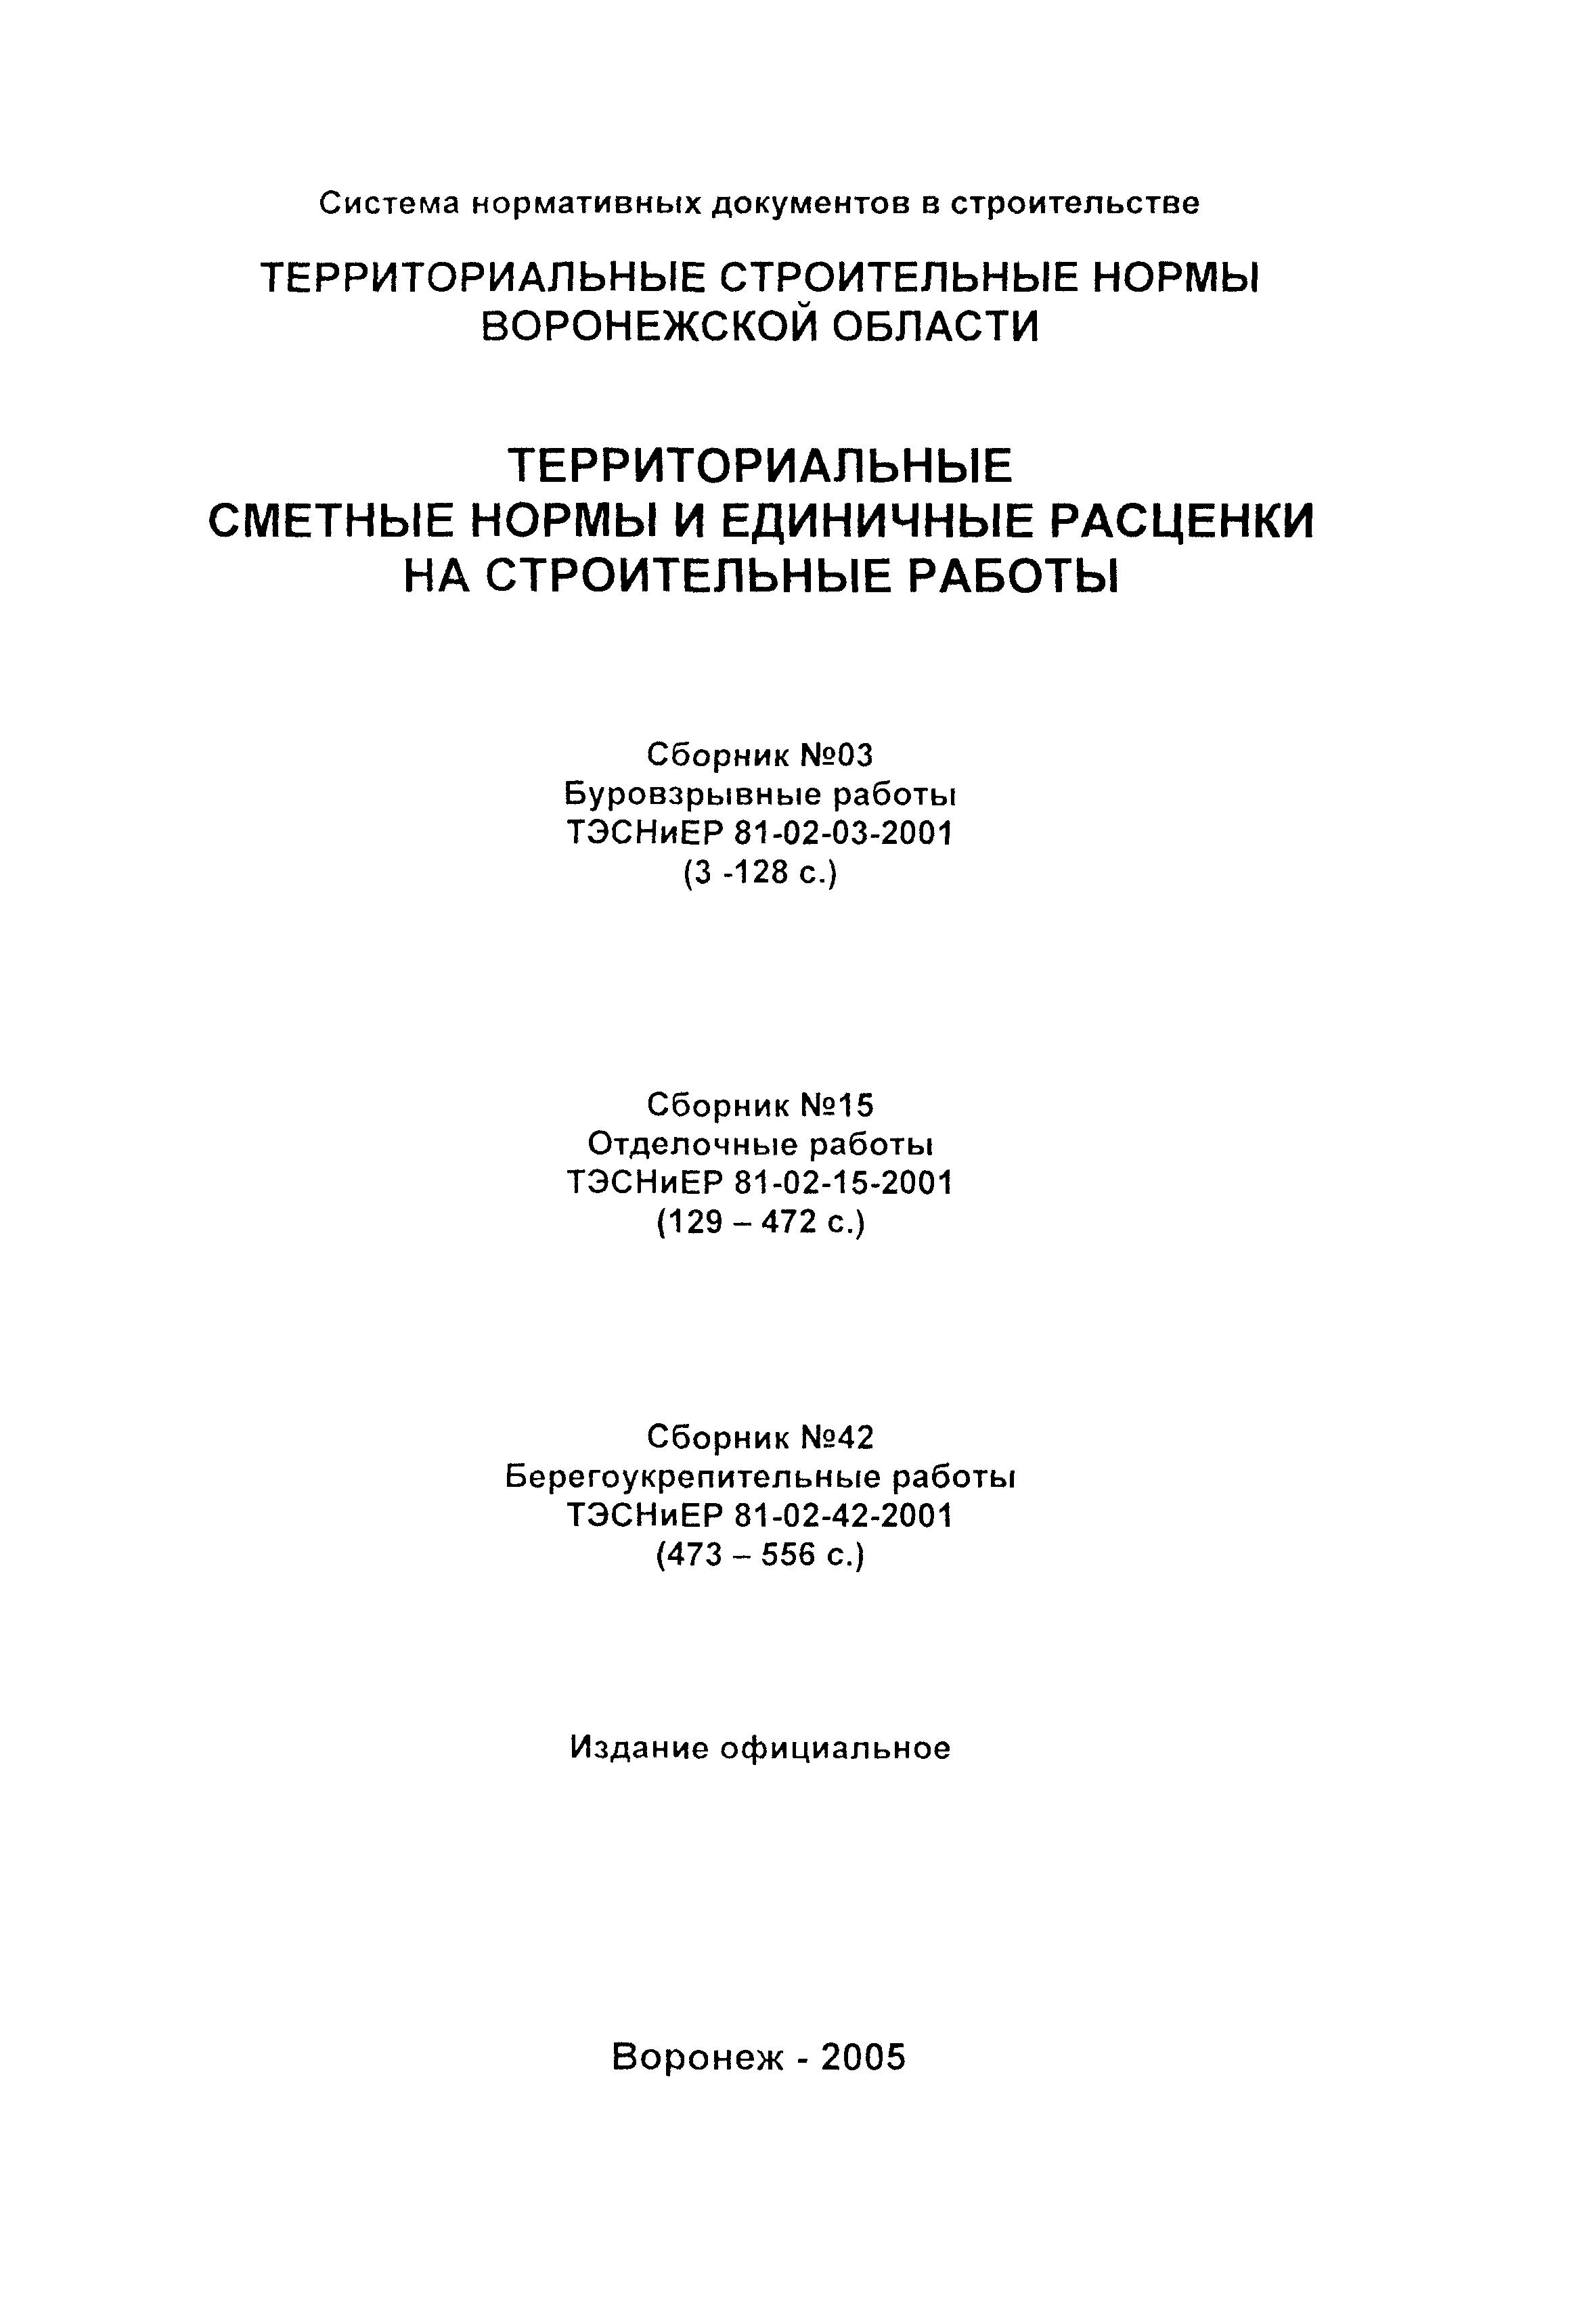 ТЭСНиЕР Воронежская область 81-02-03-2001